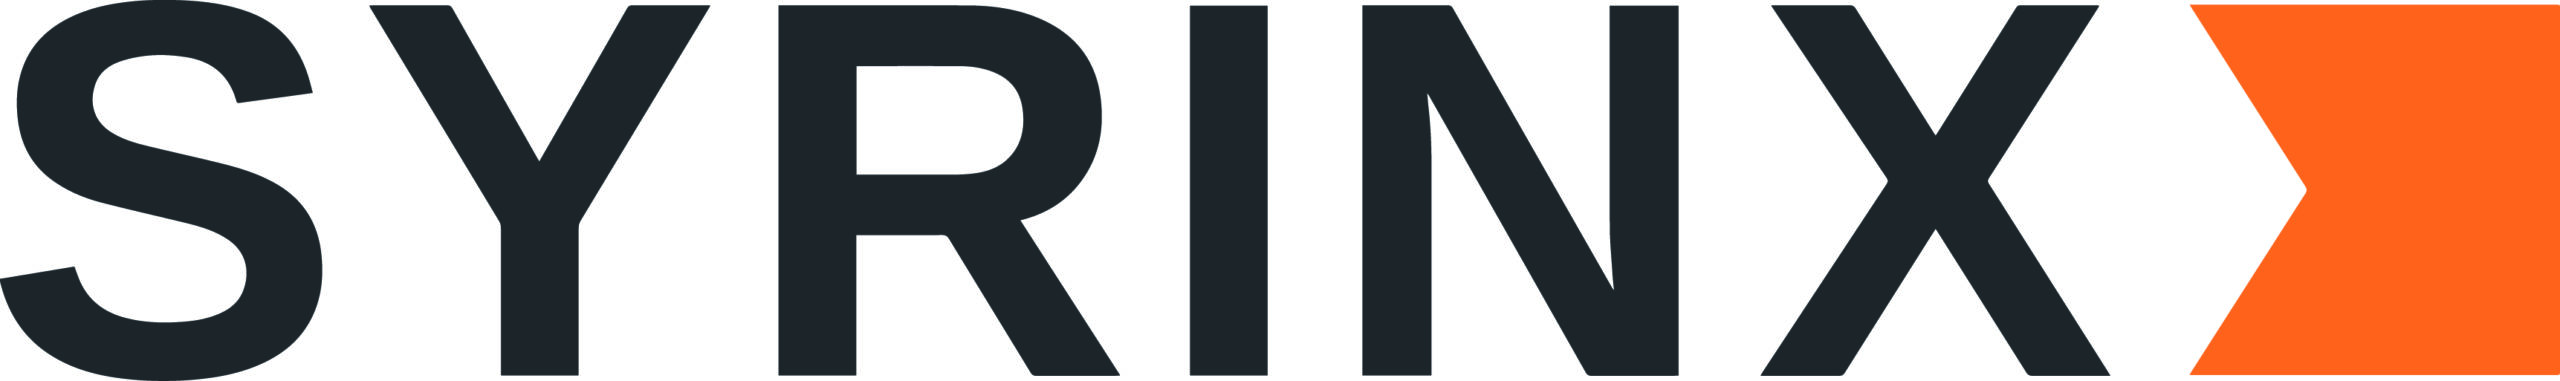 Syrinx-Logo-Colour.jpg;